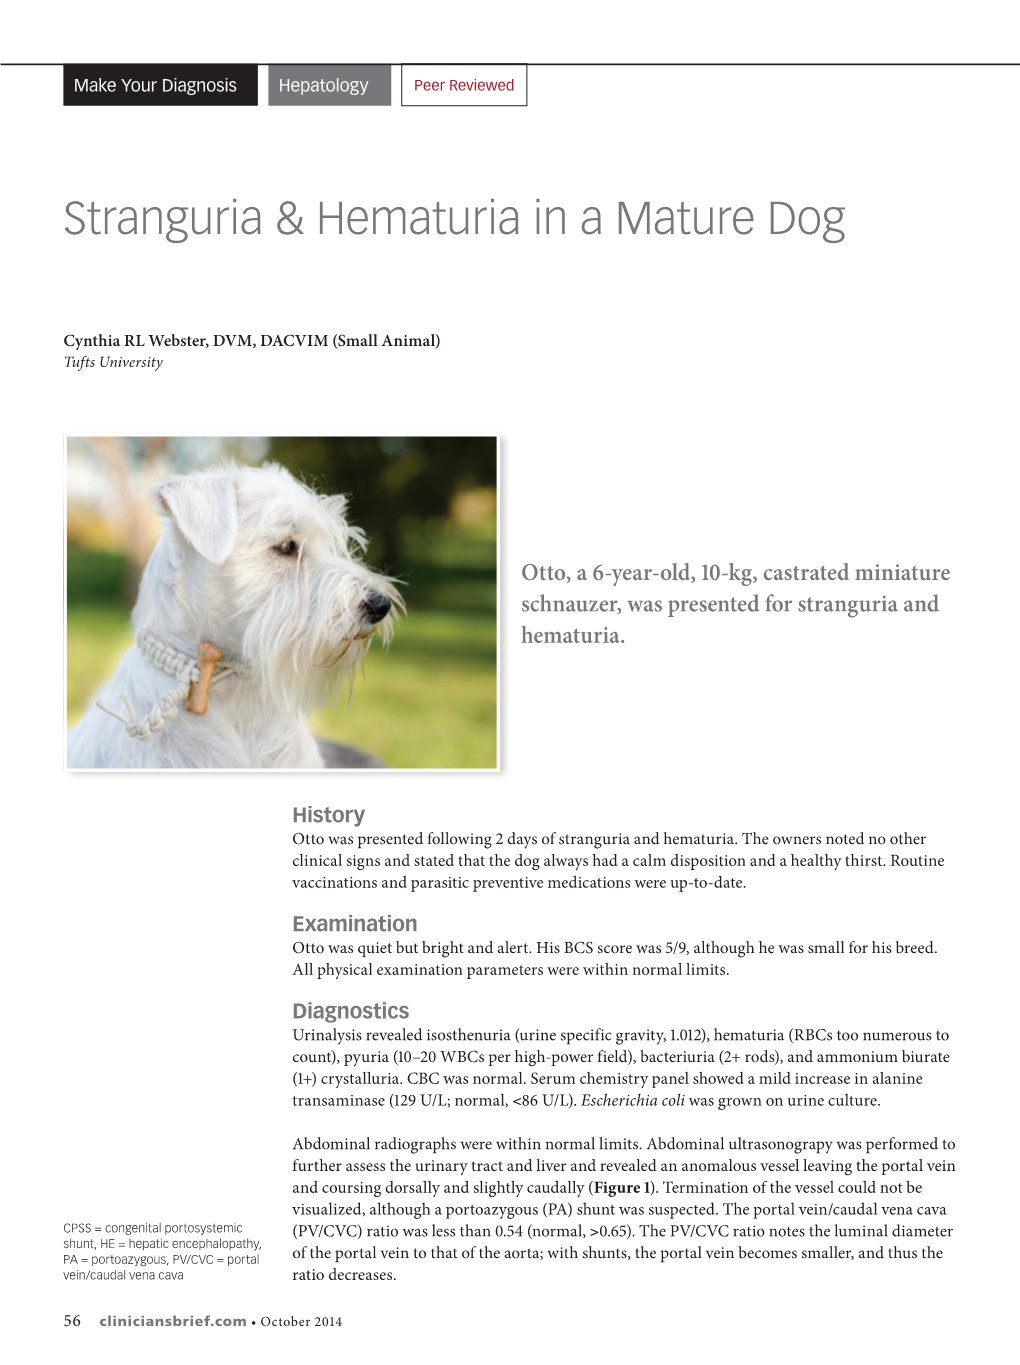 Stranguria & Hematuria in a Mature